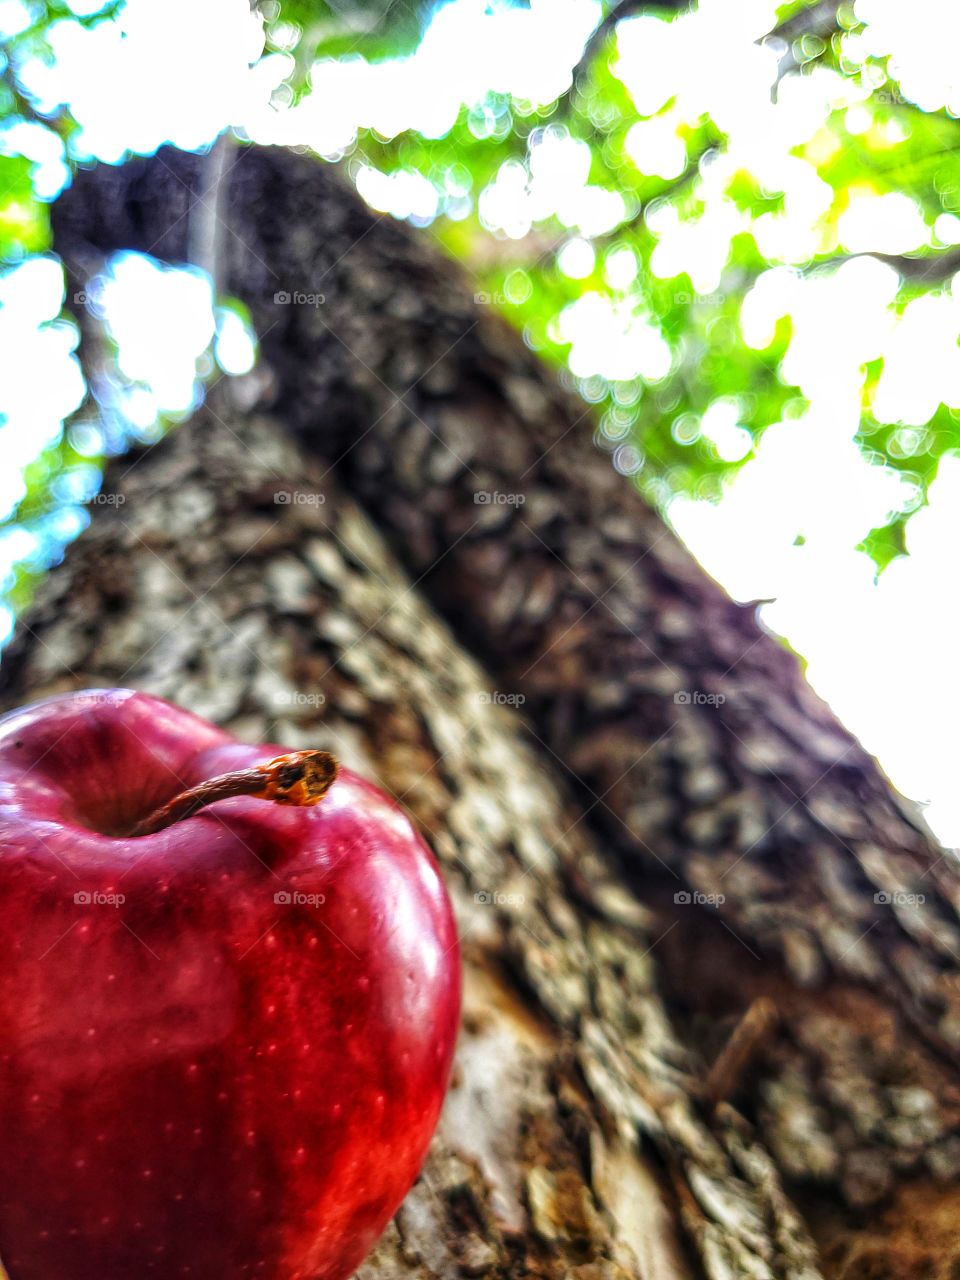 Fallen apple